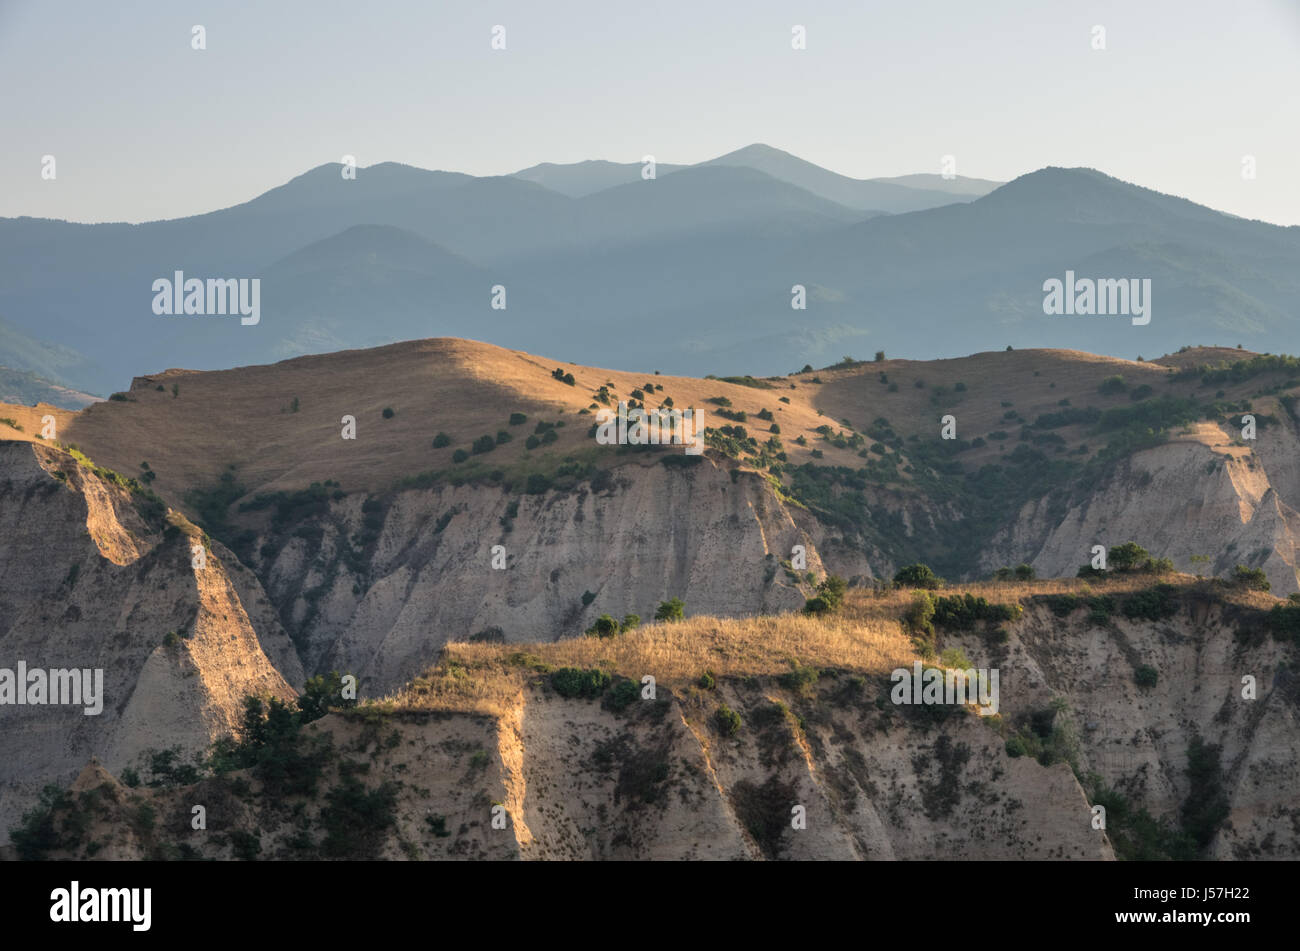 Lumière du matin plus de pyramides de sable près de Melnik avec Pirin dans l'horizon, la Bulgarie. Banque D'Images